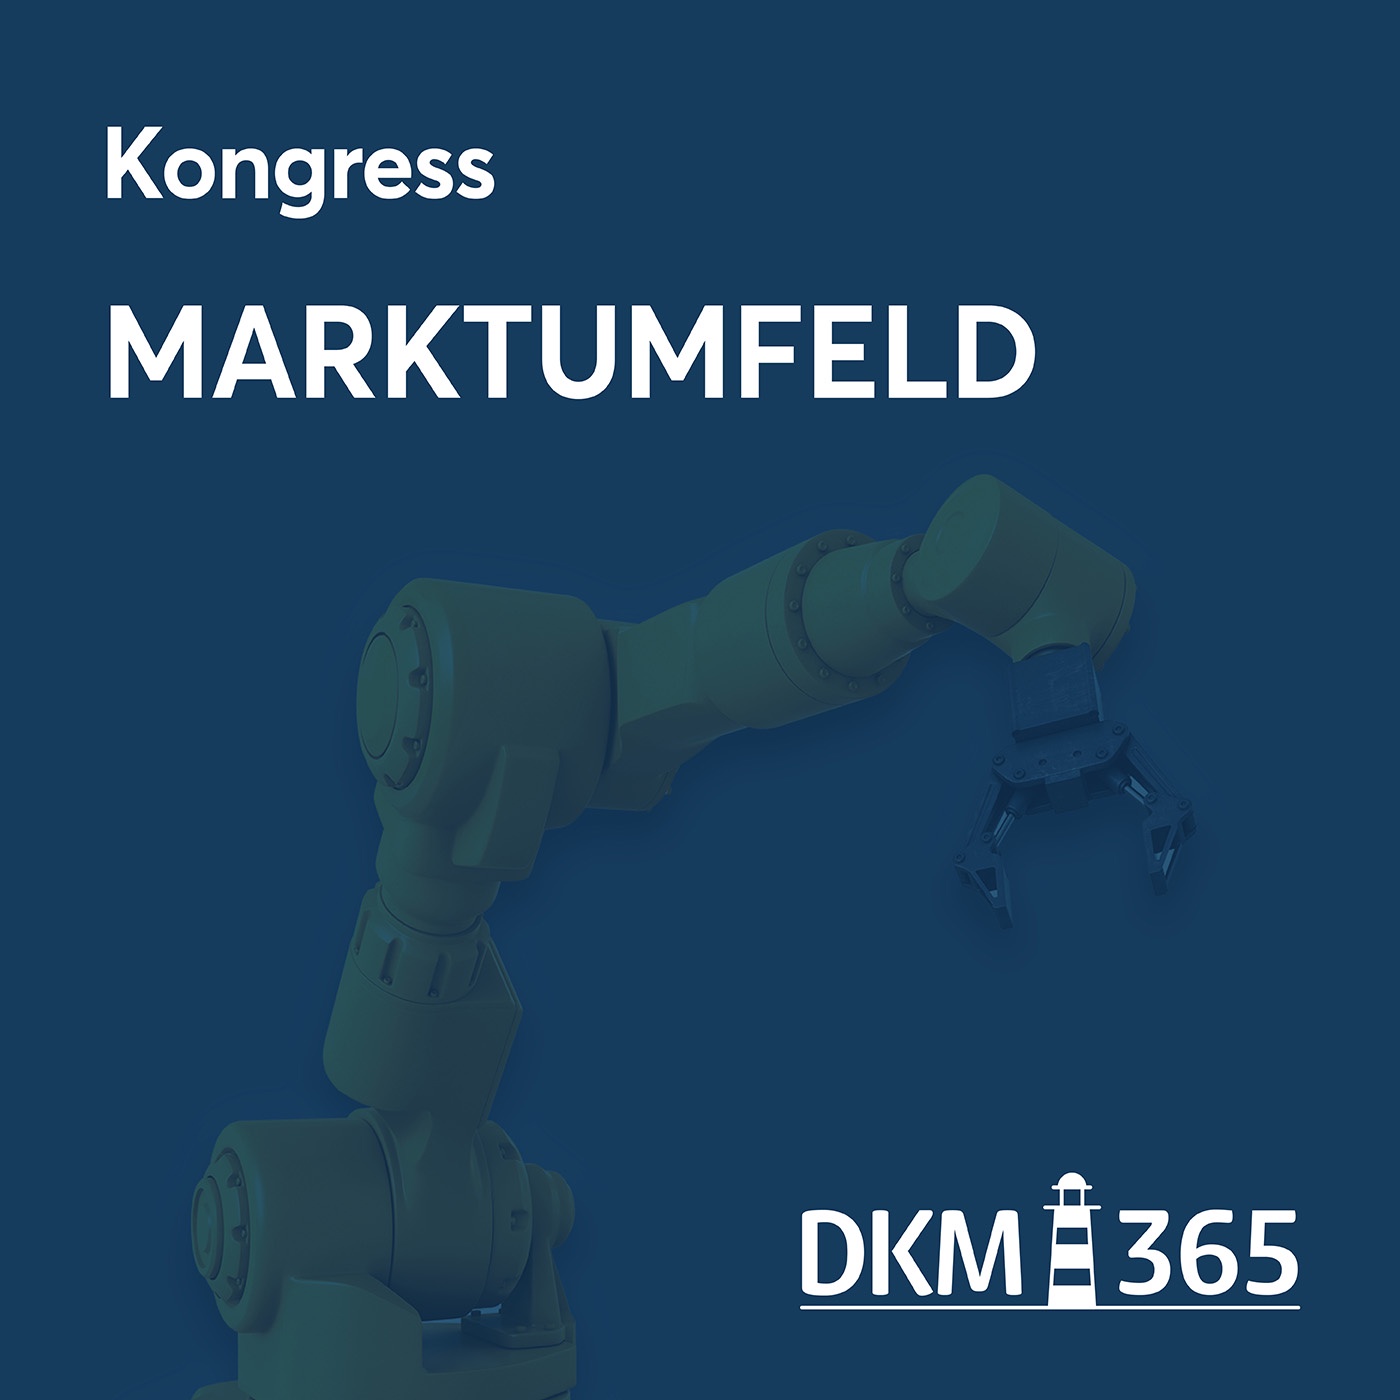 DKM OnStage - Kongress Marktumfeld mit Markus Rüttges